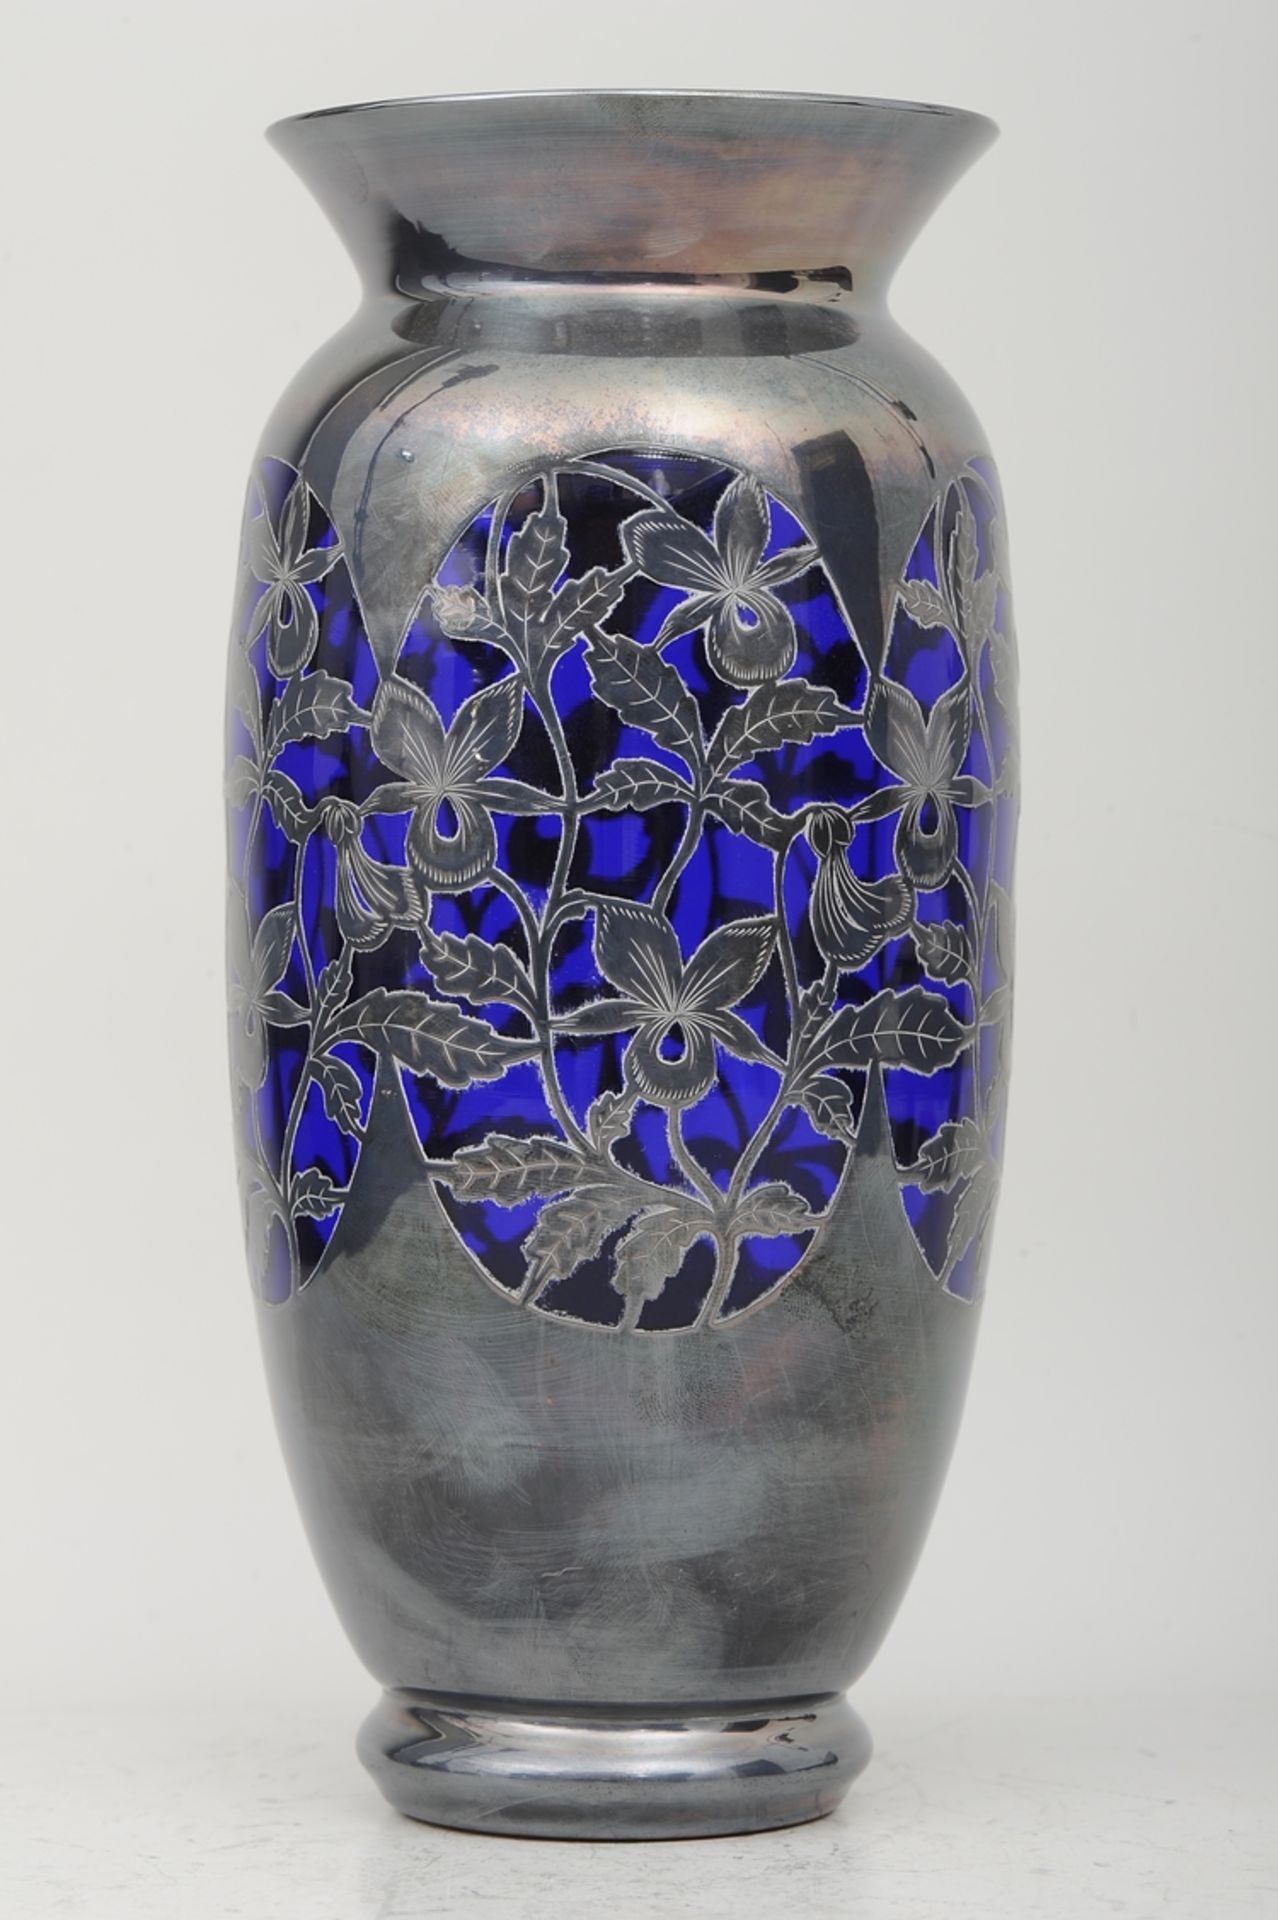 Sehr schön erhaltene SILVER OVERLAY - Vase, bläulich violetter Glaskorpus mit teils flächendeckende